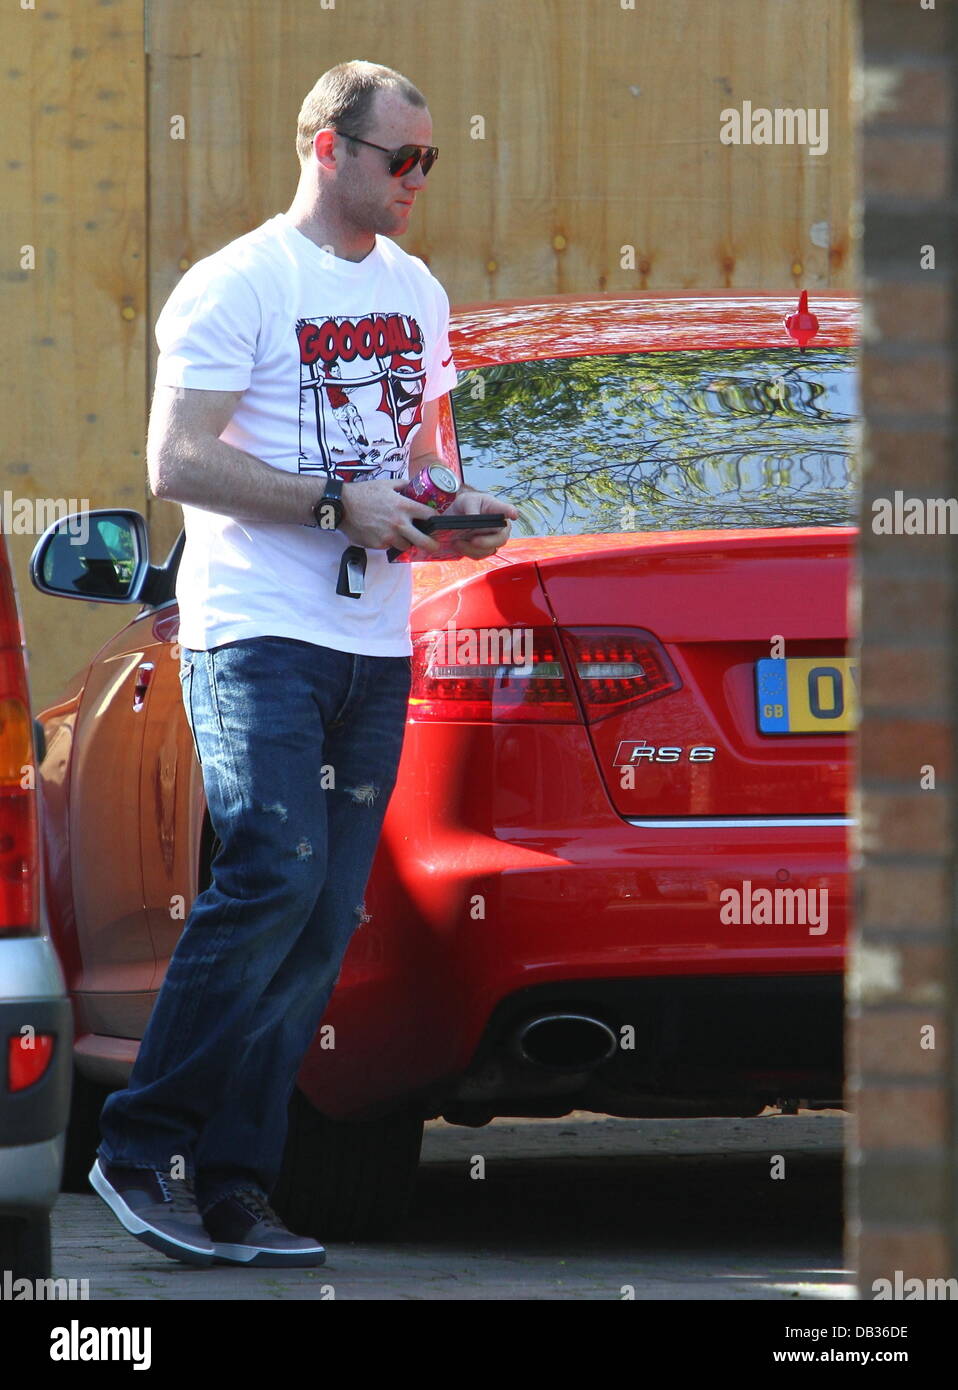 Wayne Rooney entrar en su coche a su esposa, casa de los padres del Nike  vistiendo una camiseta con la palabra "Goooal!" escrito en él. Liverpool,  Inglaterra - 09.04.11 Fotografía de stock - Alamy